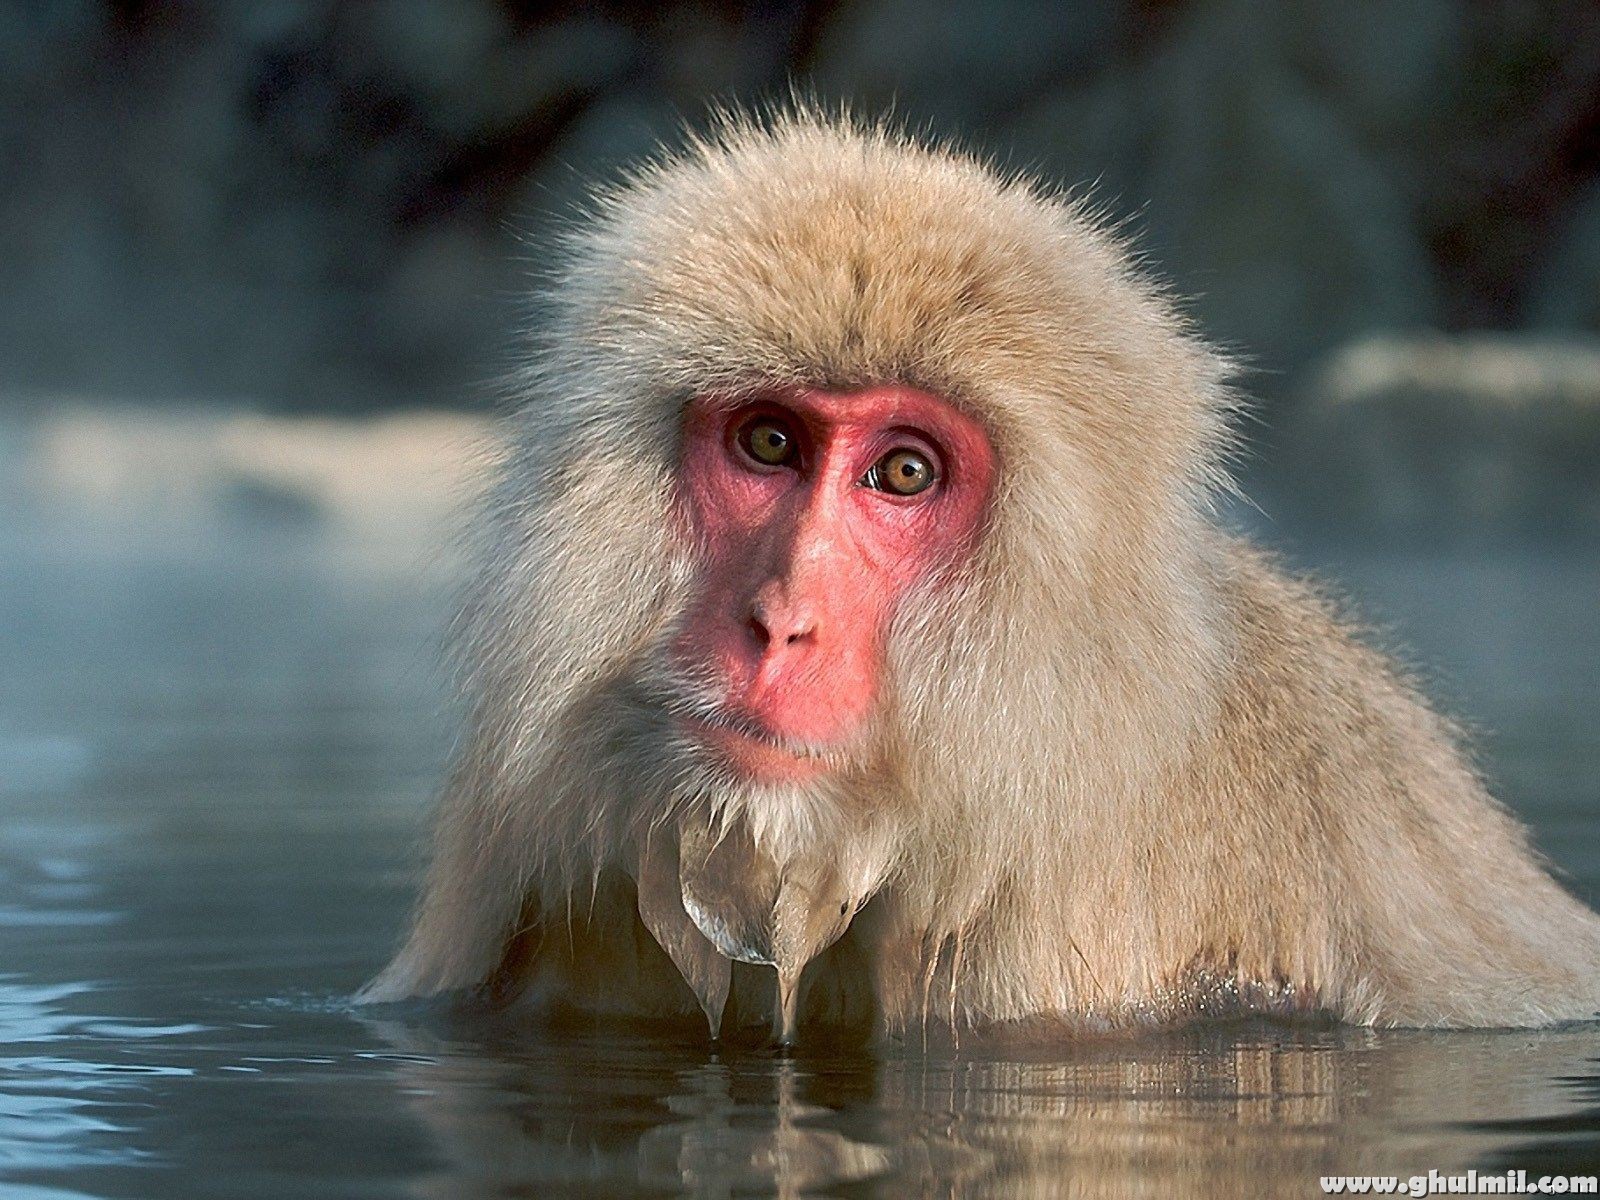 a kay fondo de pantalla hd 2015,macaco,macaco japonés,primate,boca,fauna silvestre